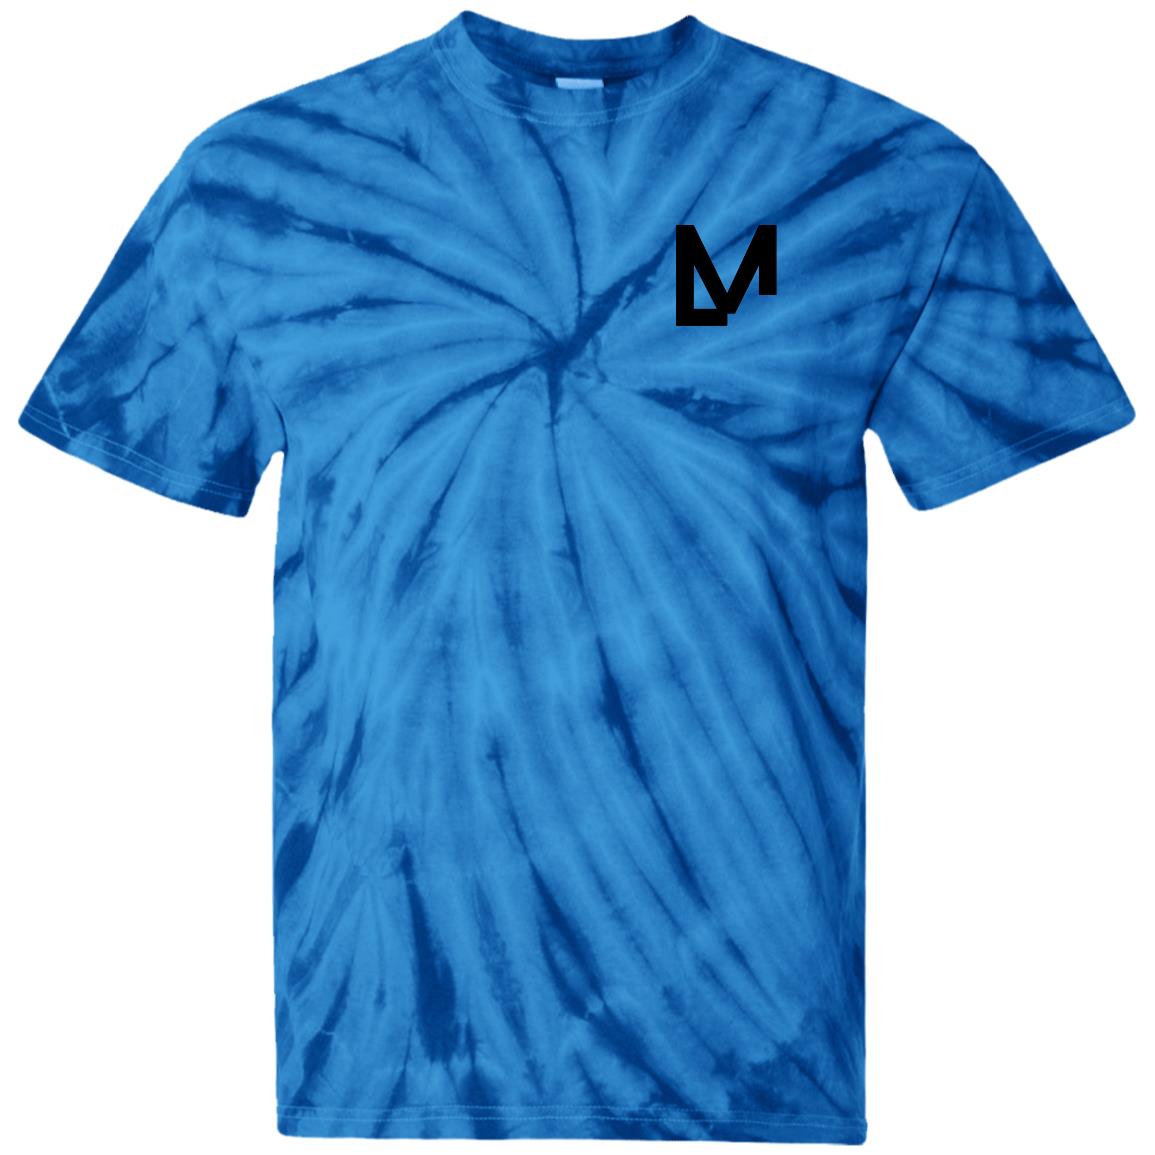 LM Premium Spider Tie Dye T-Shirt